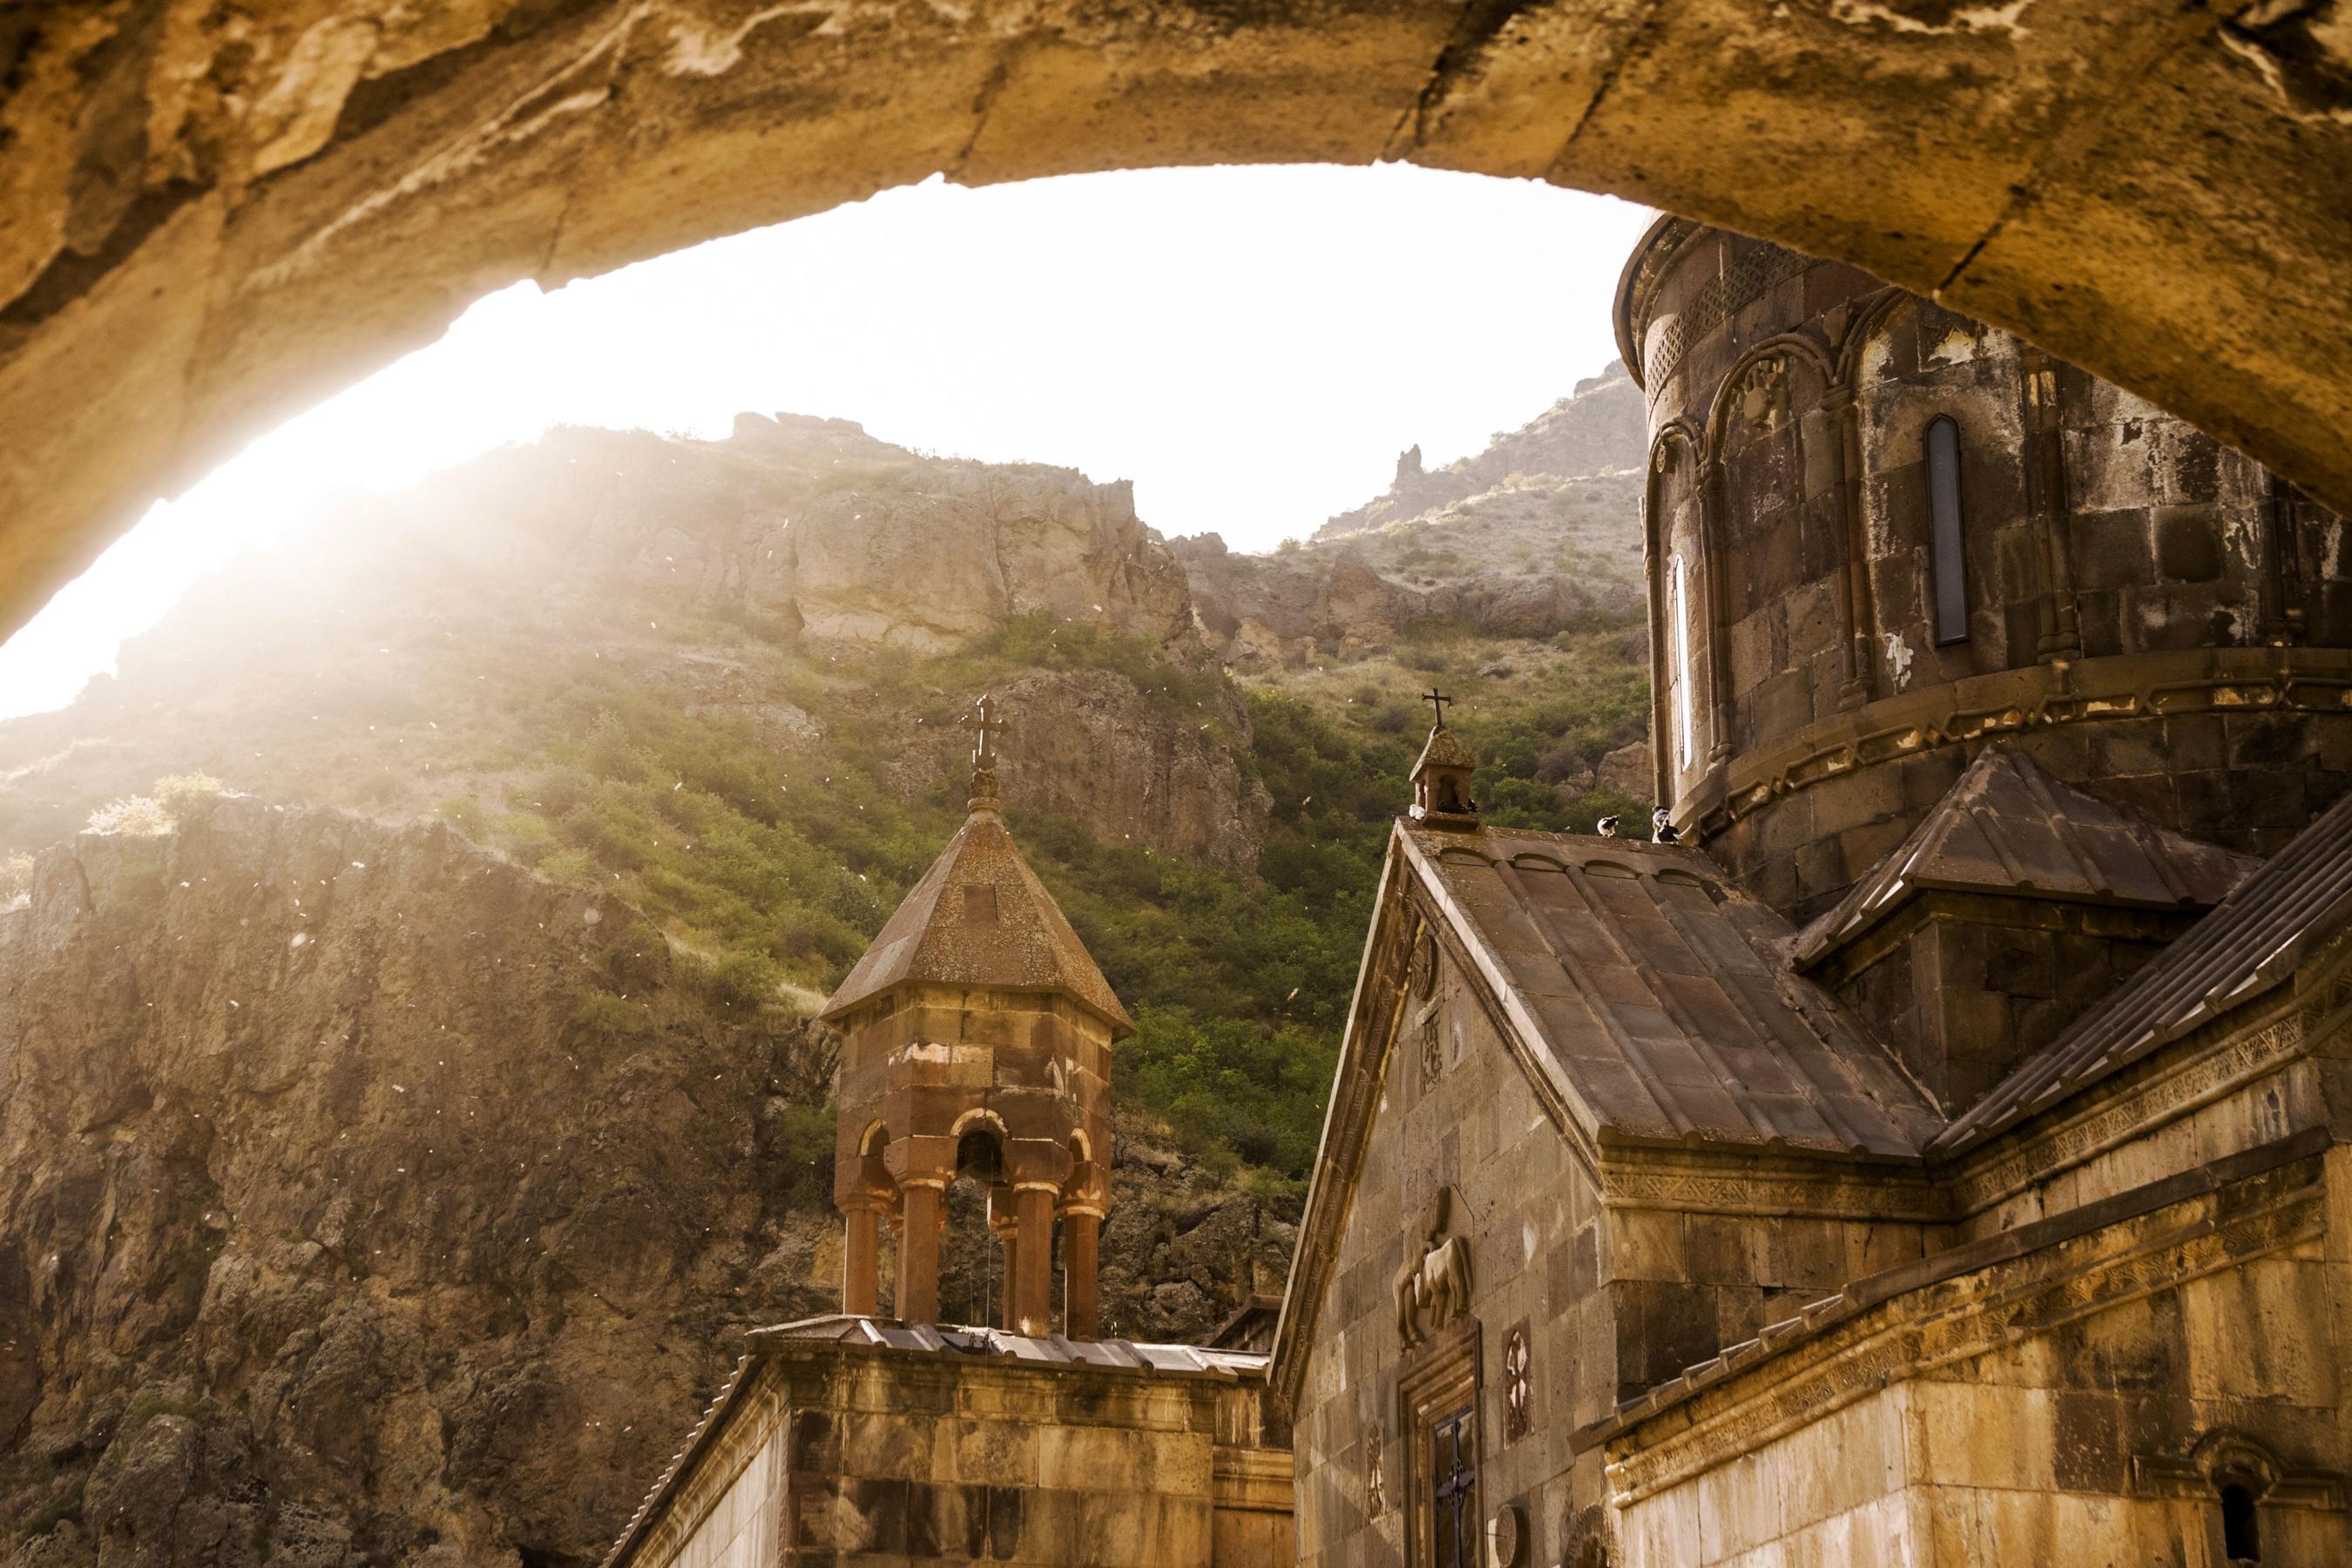 Армения-мечта экотуриста: старейшее туристическое издание в мире Fodor’s